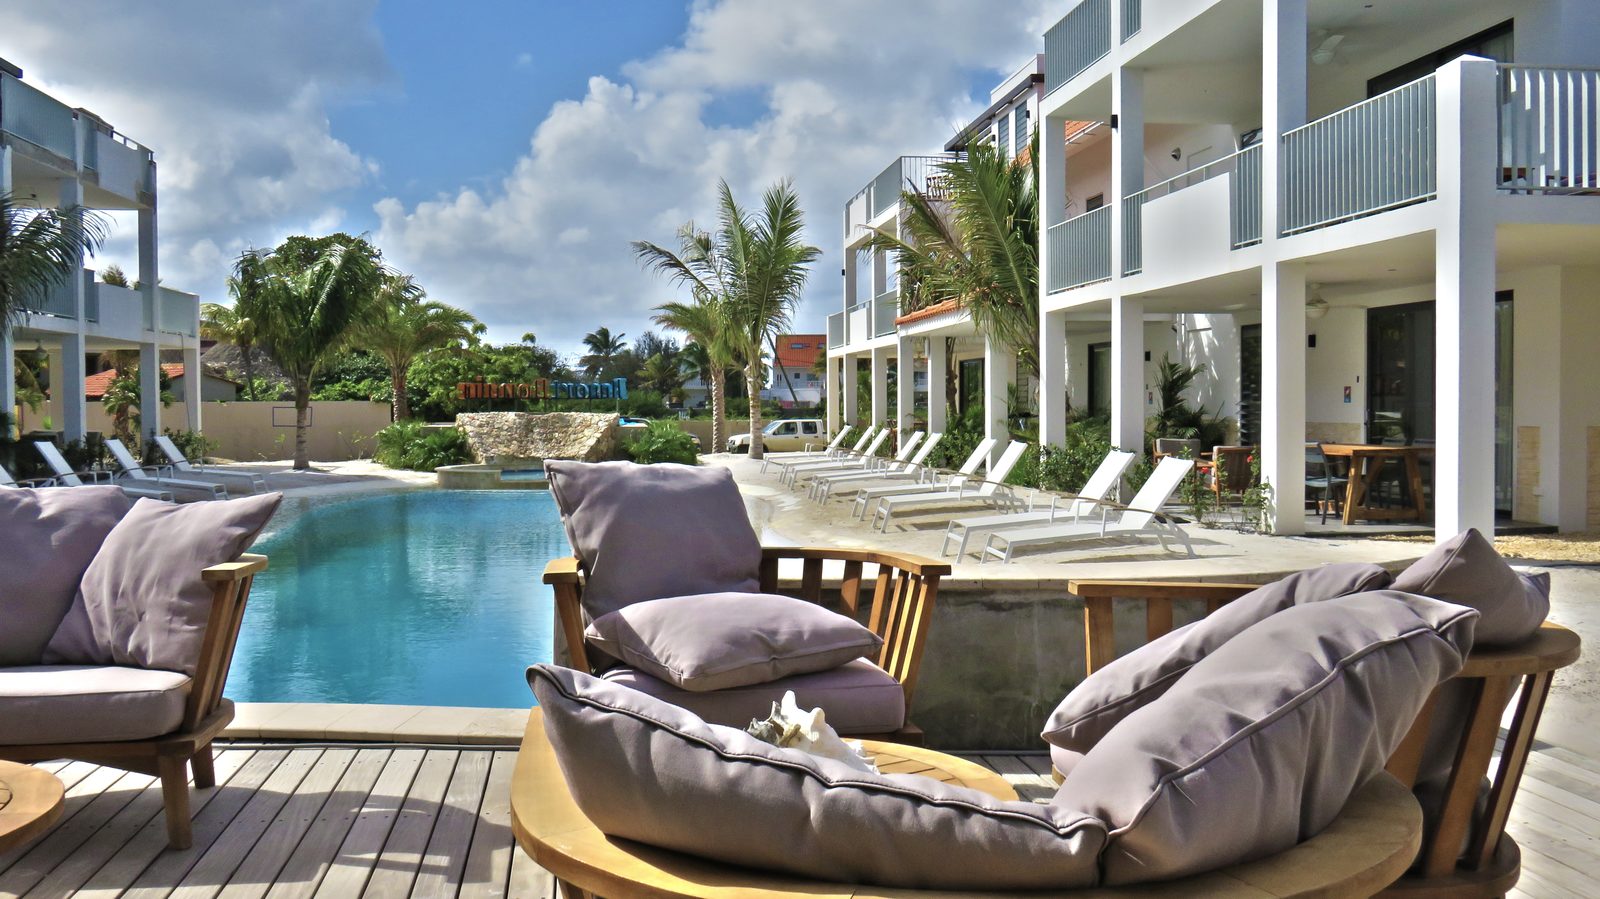 Resort Bonaire permite a huéspedes de todas las edades disfrutar de esta hermosa isla. ¡Ve las fotos y reserva tu estancia en Bonaire!
